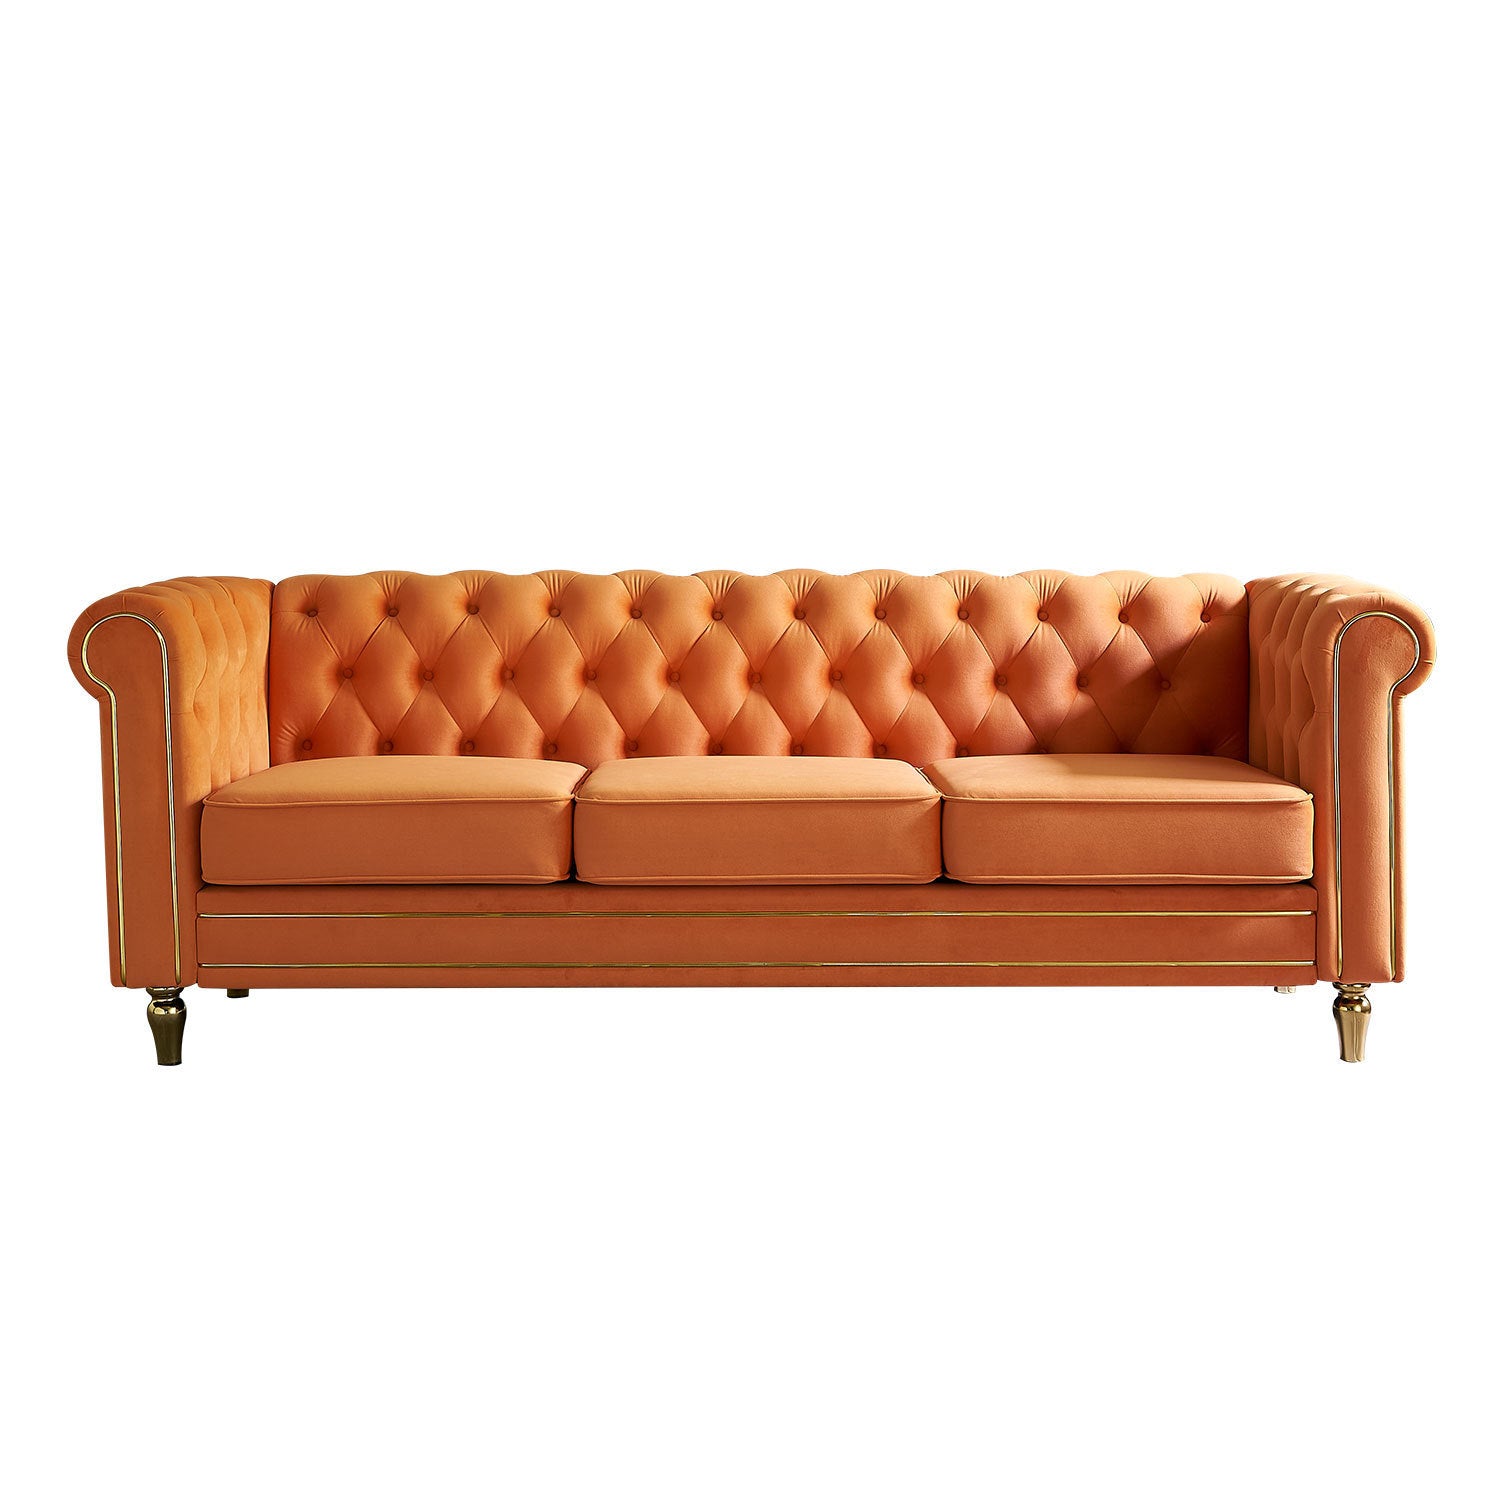 🆓🚛 84.65" Chesterfield Velvet Sofa for Living Room, Orange